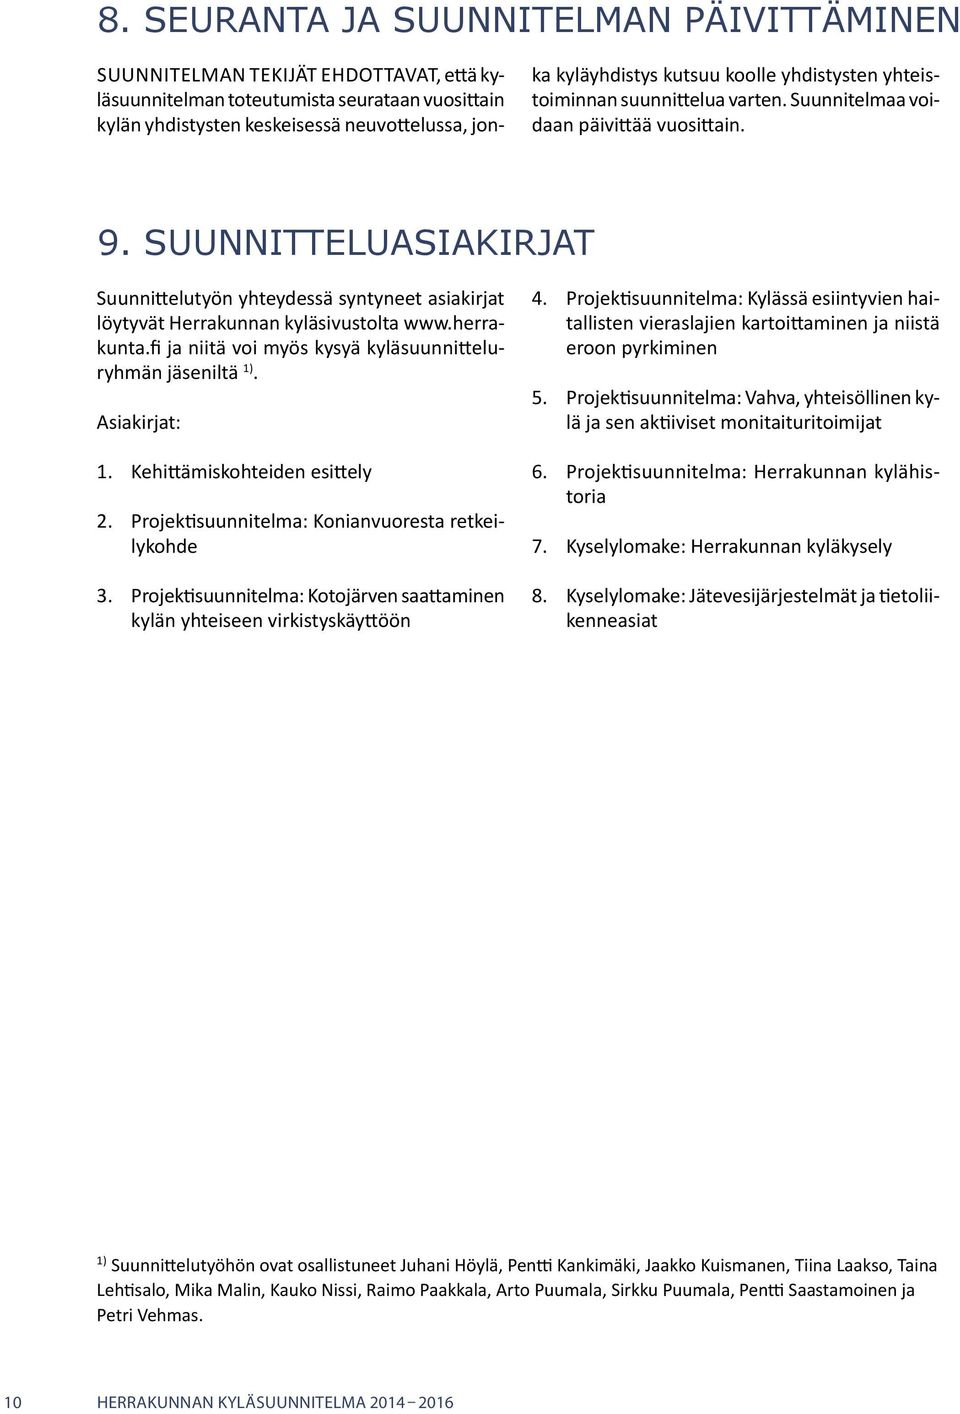 Suunnitteluasiakirjat Suunnittelutyön yhteydessä syntyneet asiakirjat löytyvät Herrakunnan kyläsivustolta www.herrakunta.fi ja niitä voi myös kysyä kyläsuunnitteluryhmän jäseniltä 1). Asiakirjat: 1.